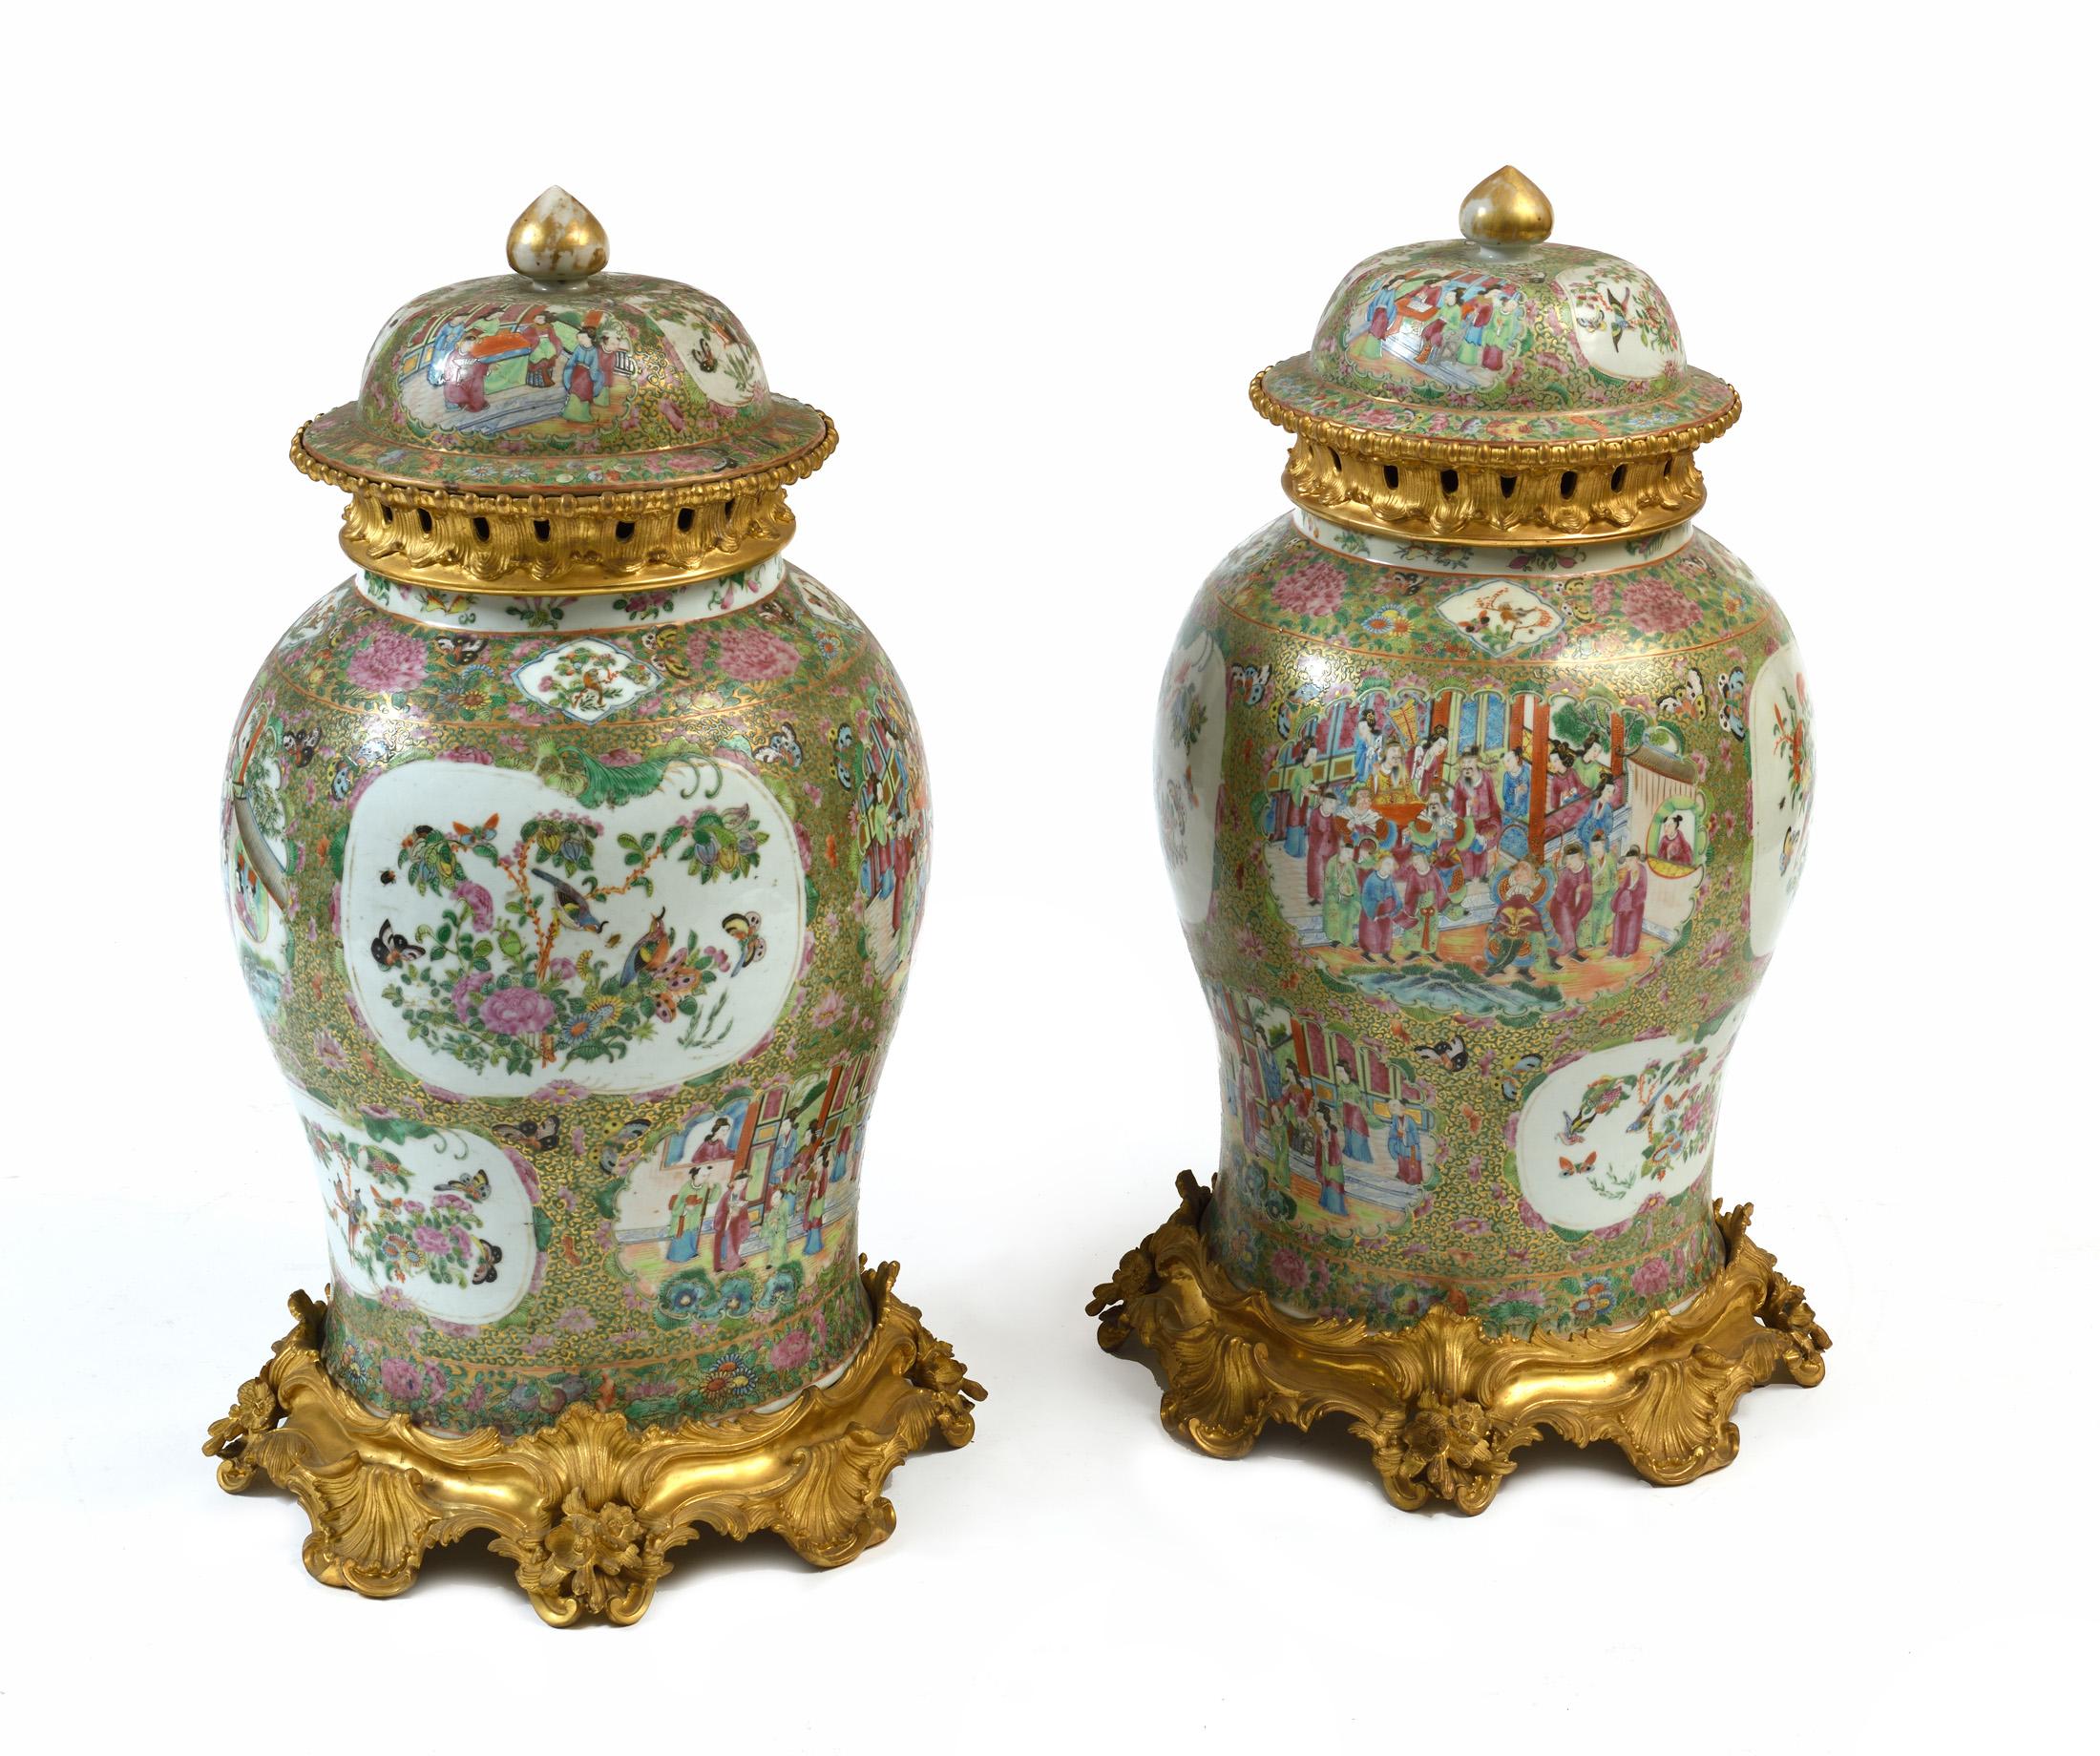 Une superbe paire de vases roses en porcelaine de canton avec médaillon.  bronze doré dans la base et le sommet des vases, probablement le bronze doré est plus tardif que la porcelaine autour de  1890  /1900